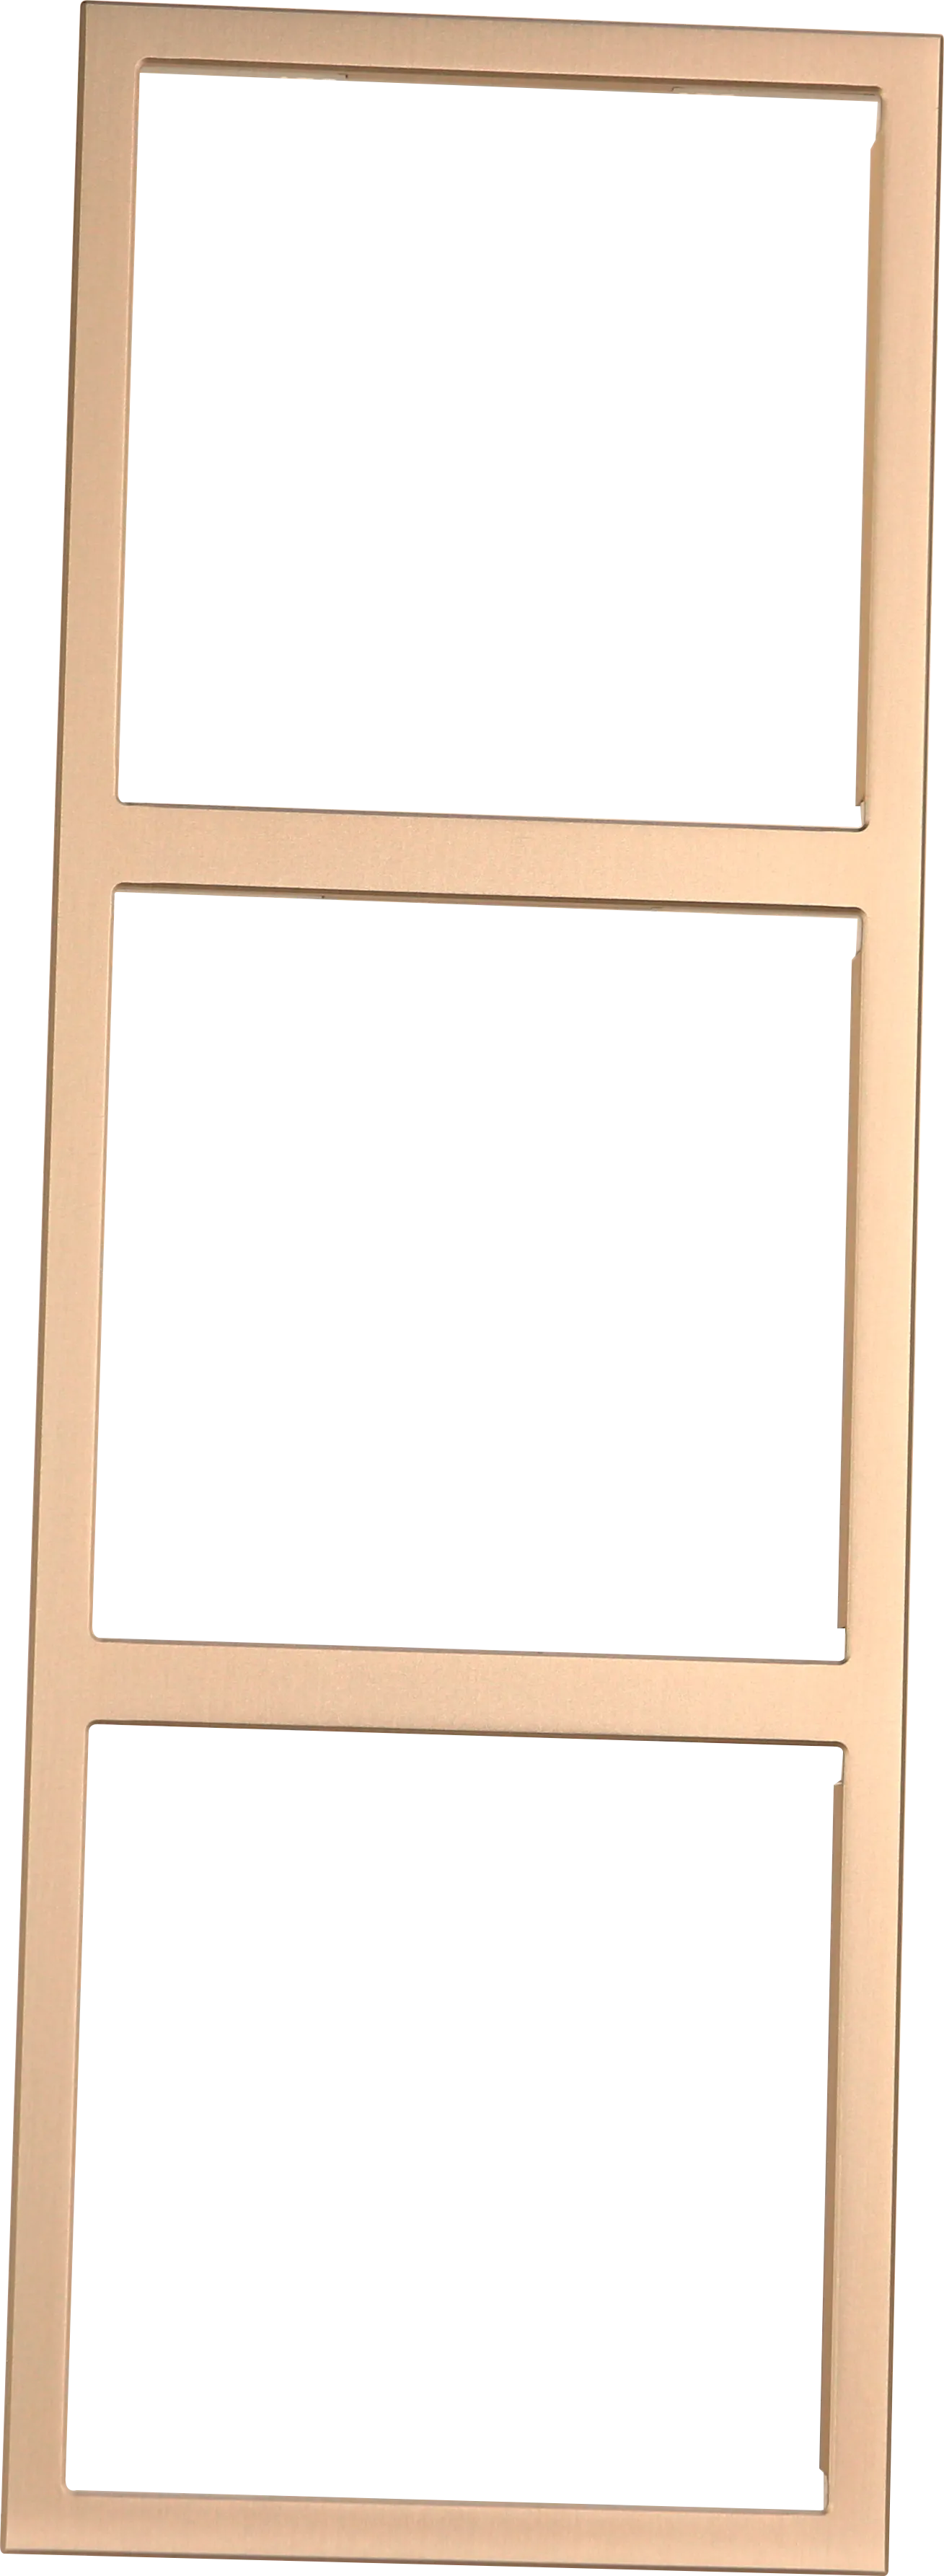 Рамка на 3 модуля серии Tile, вертикальная установка, металл фото 3